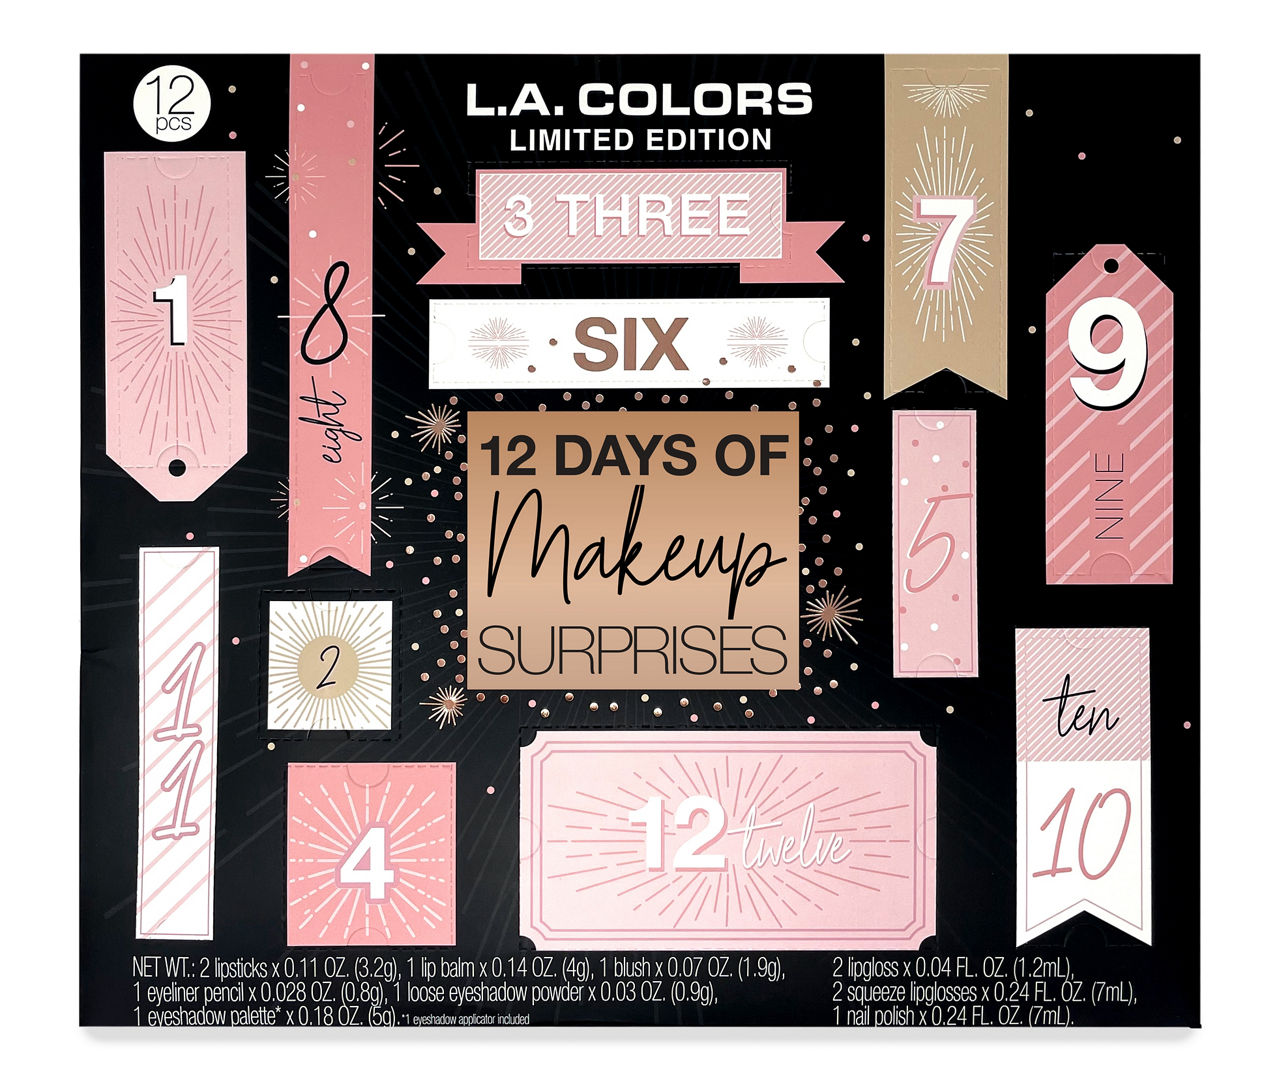 L.A. Colors 12 Days of Makeup Surprises Gift Set